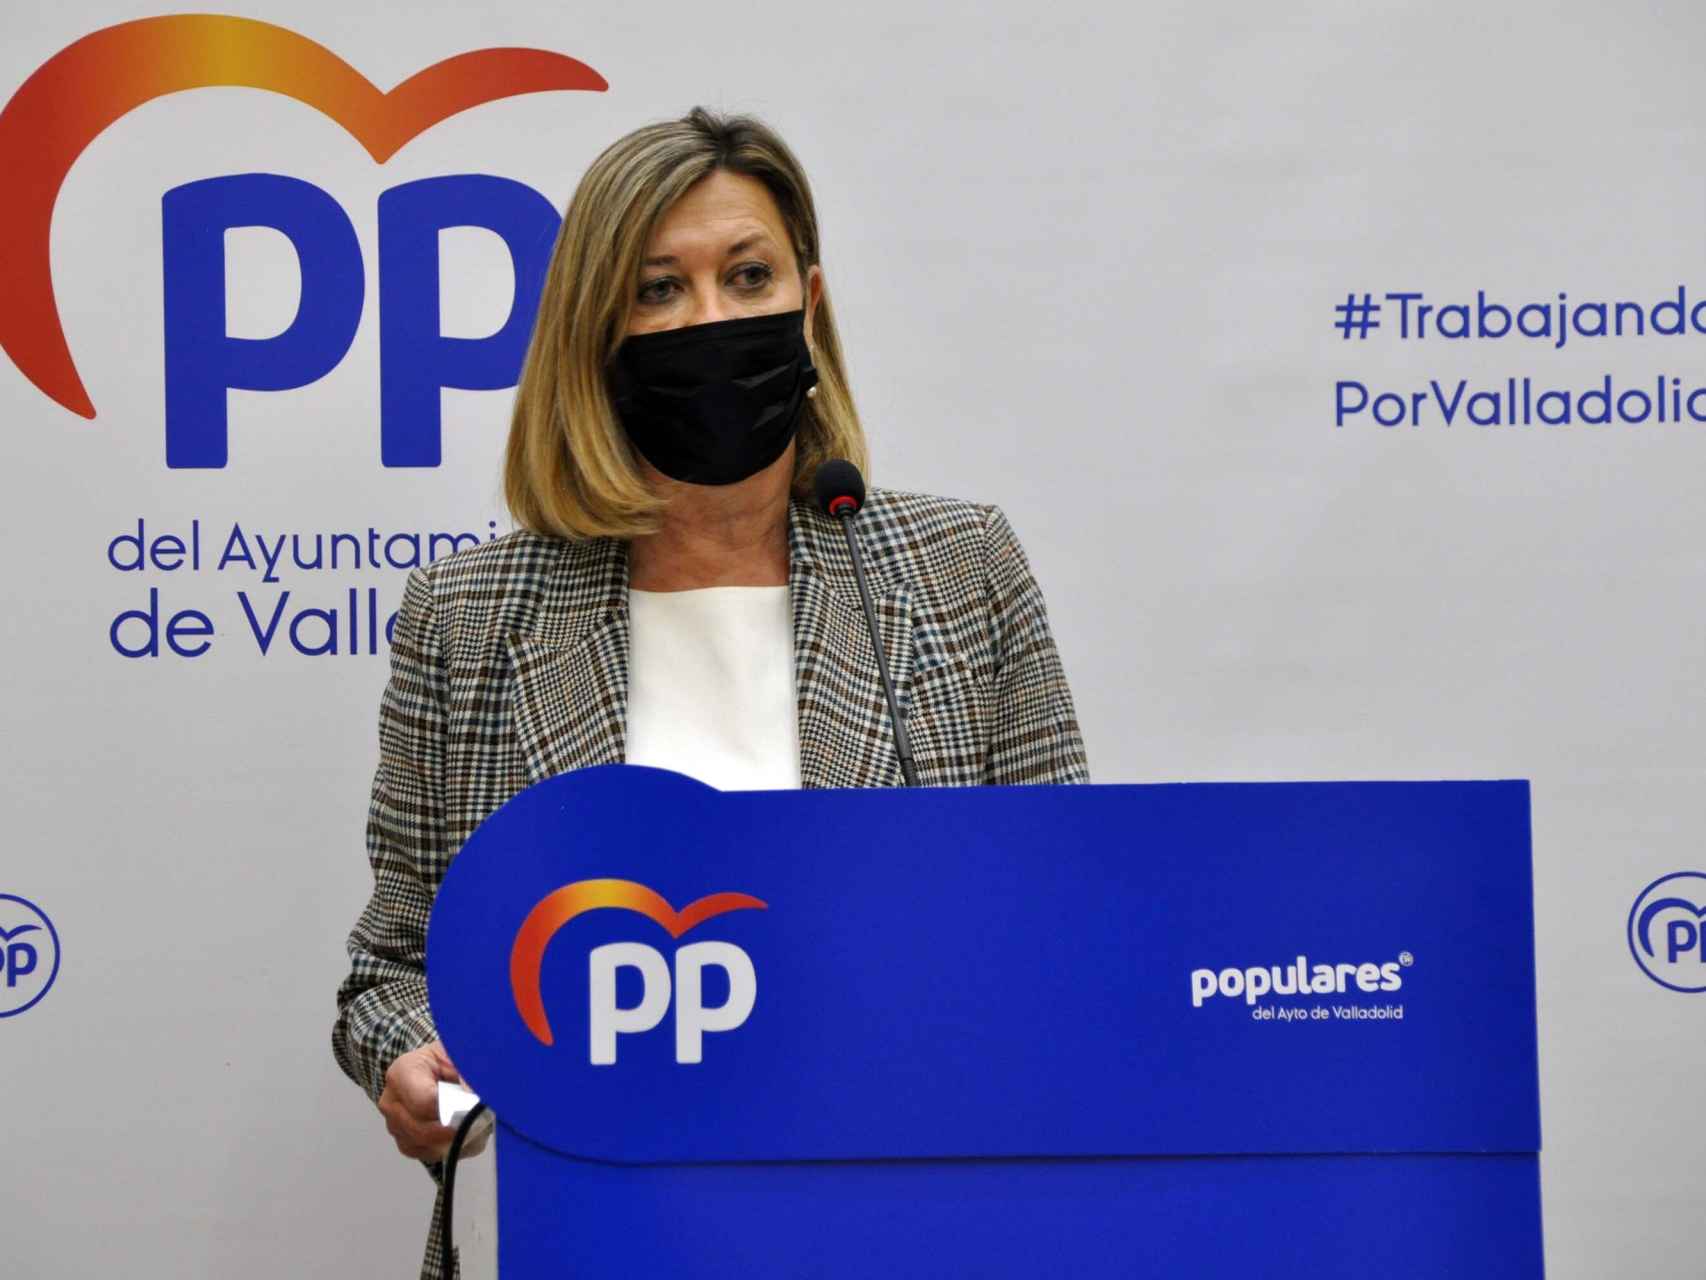 La portavoz del PP de Valladolid, Pilar del Olmo, en una imagen de archivo. / ICAL